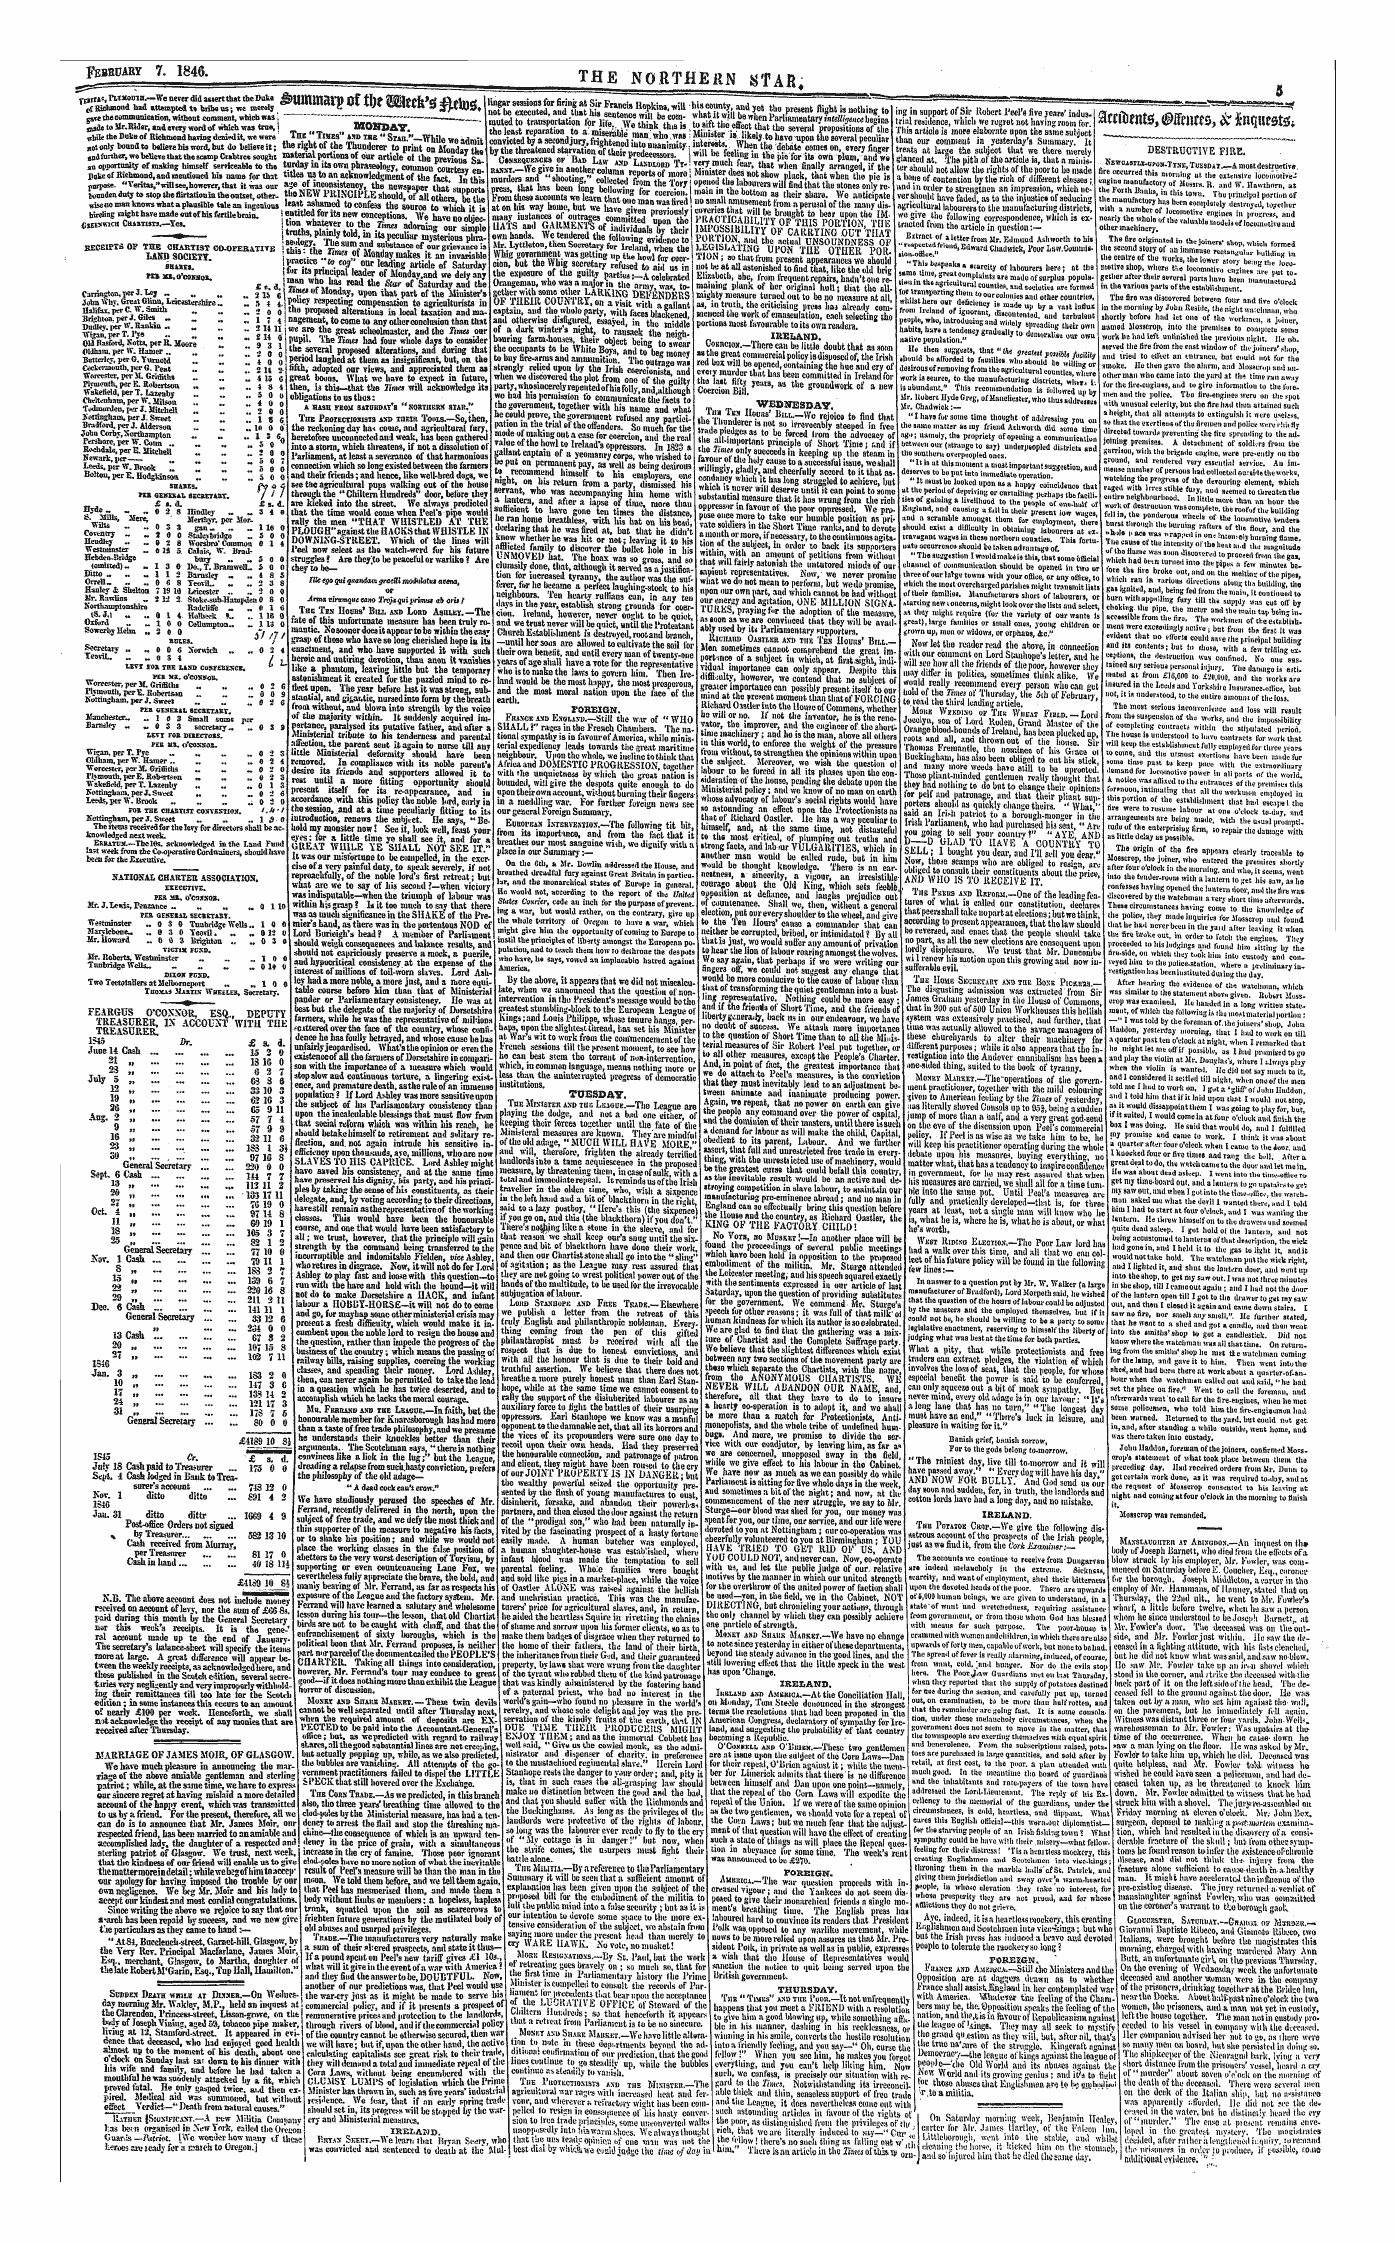 Northern Star (1837-1852): jS F Y, 1st edition - &Mrana(J&Gt; Iff Tin Mttws #Eto&